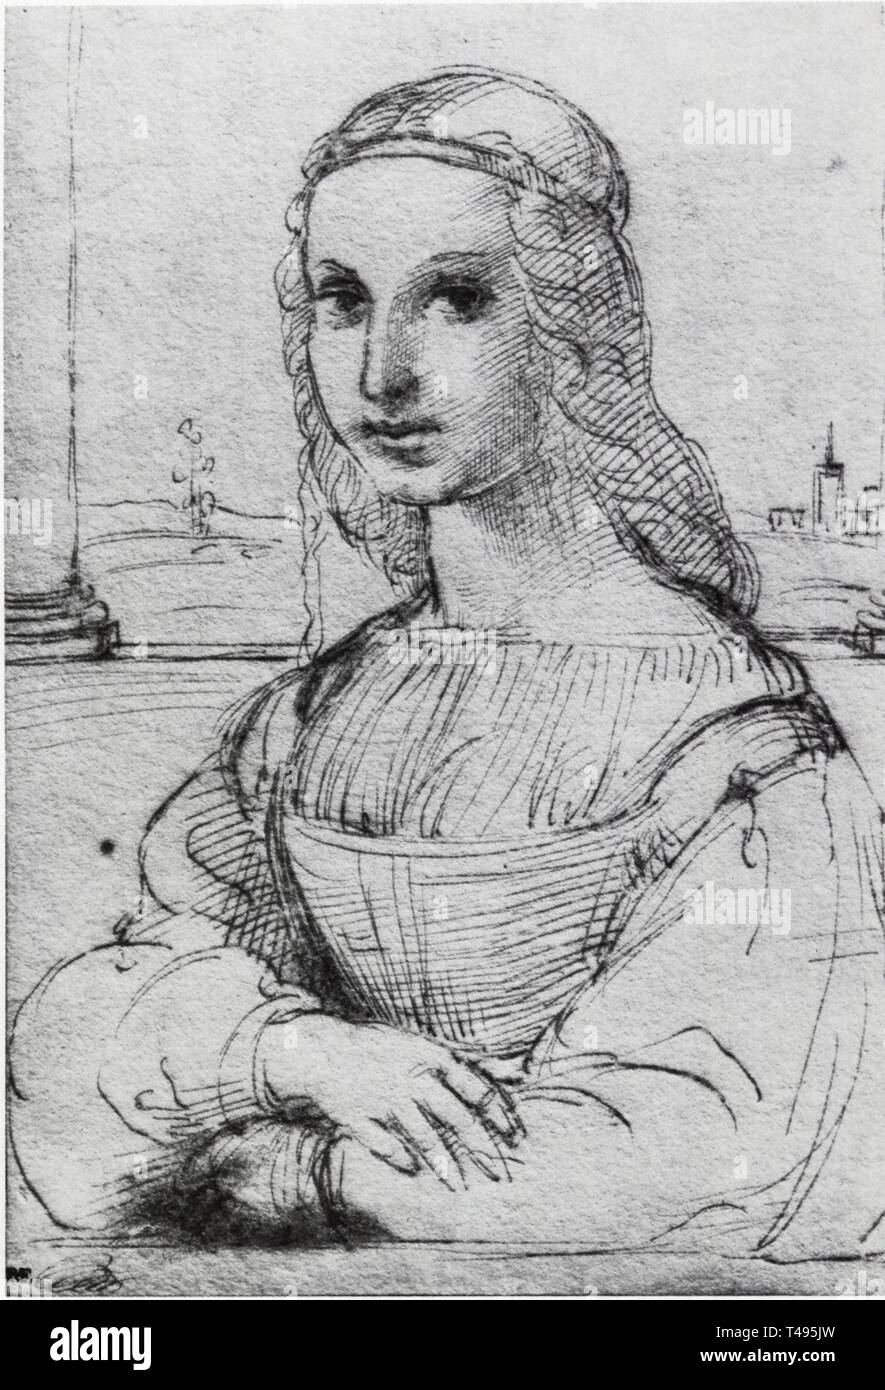 RAPHAEL.ETUDE POUR LE PORTRAIT DE MADDALENA DONI.DESSIN.1505-1506 Stockfoto